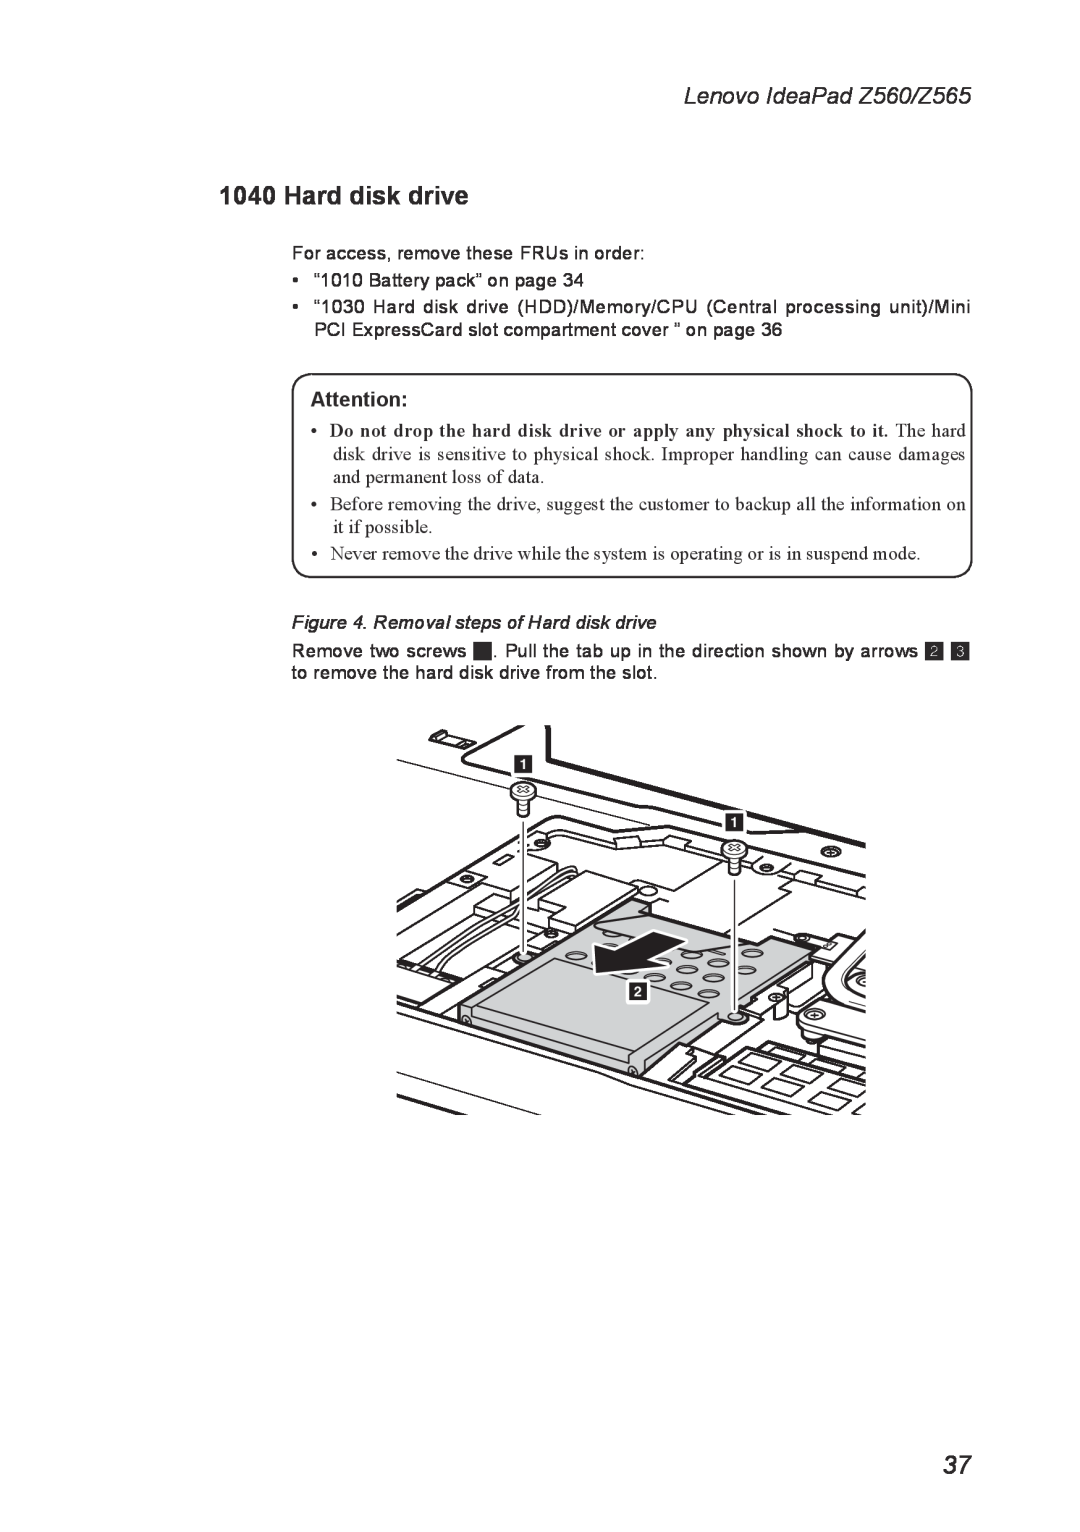 Lenovo manual Removal steps of Hard disk drive, Lenovo IdeaPad Z560/Z565 